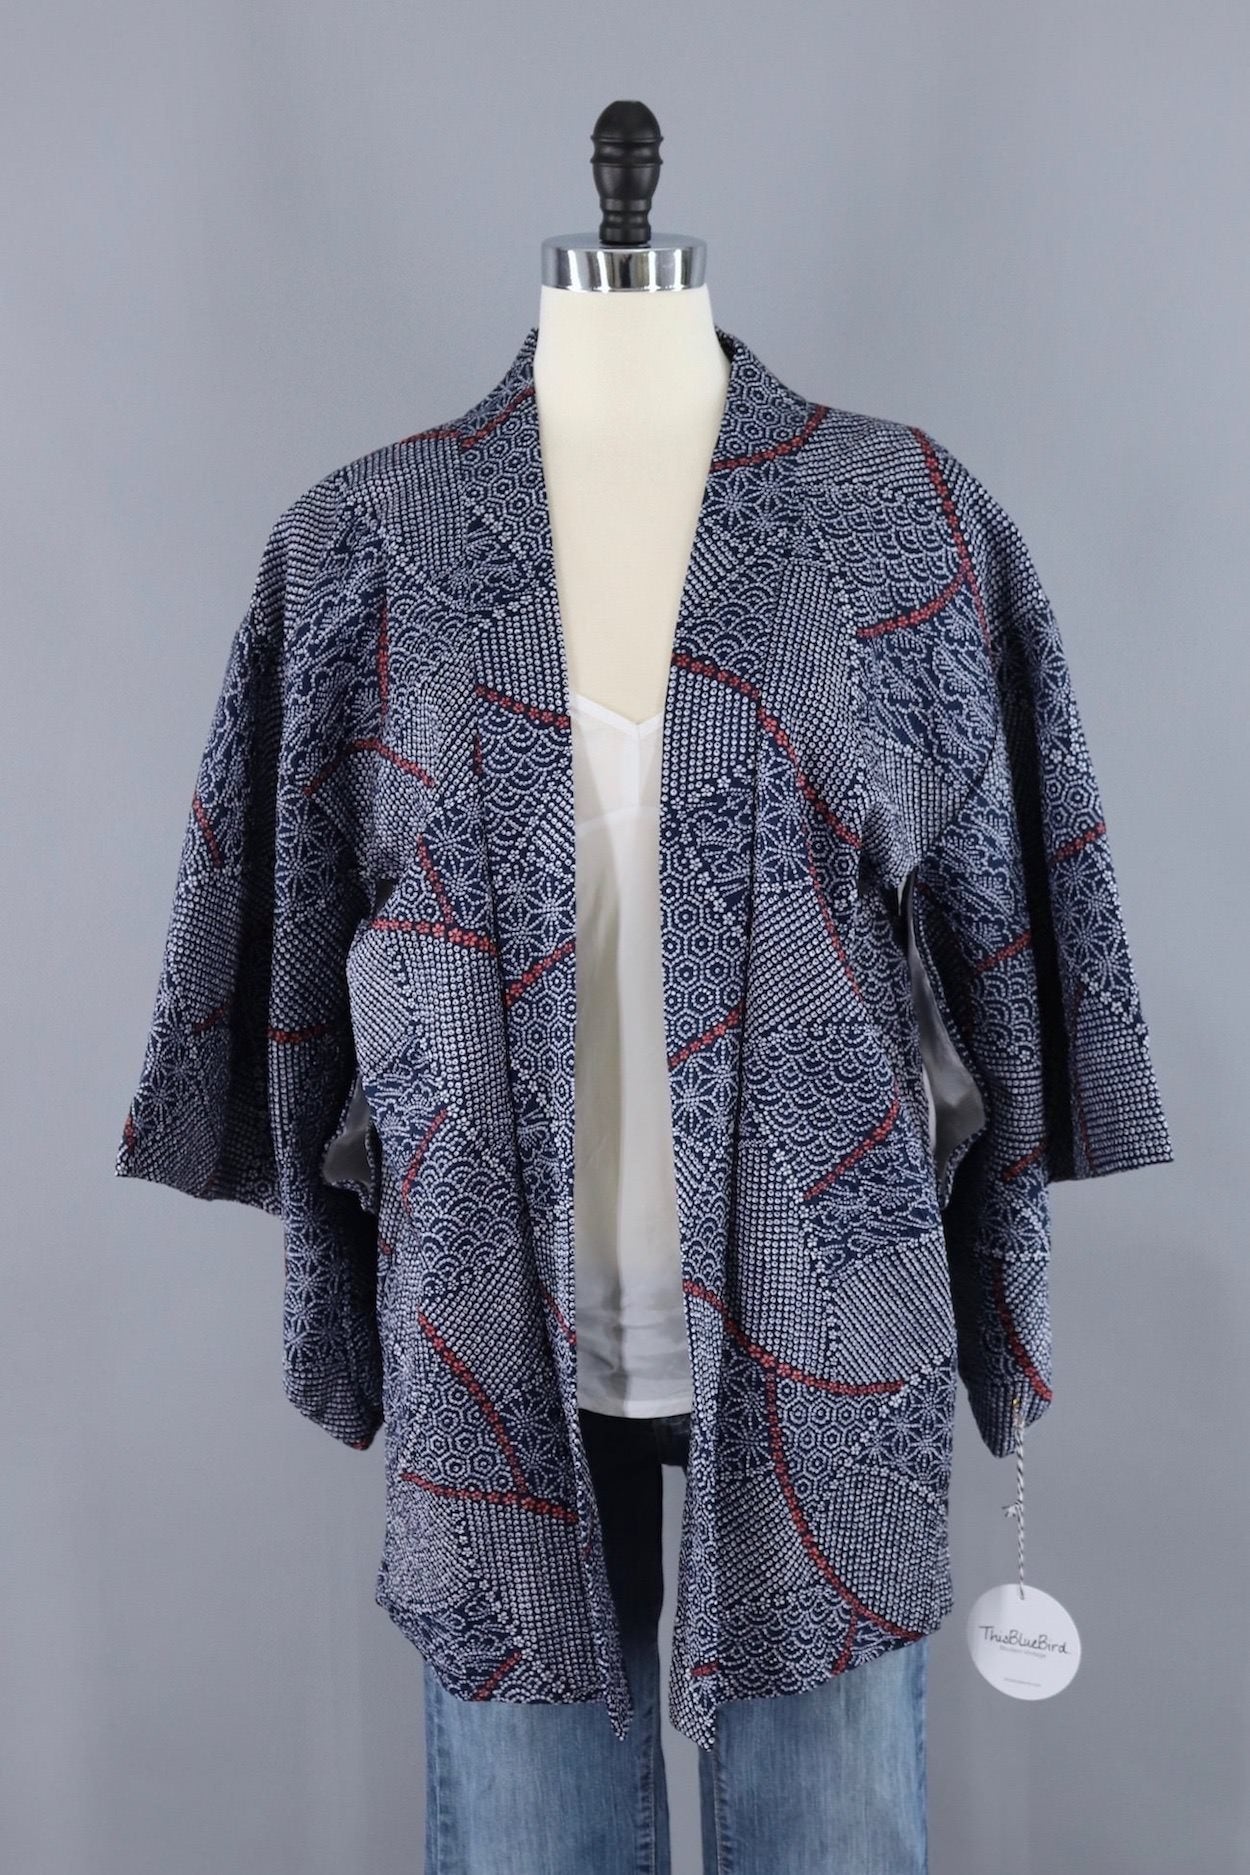 Vintage Silk Kimono Cardigan / Navy Blue and White Shibori - ThisBlueBird